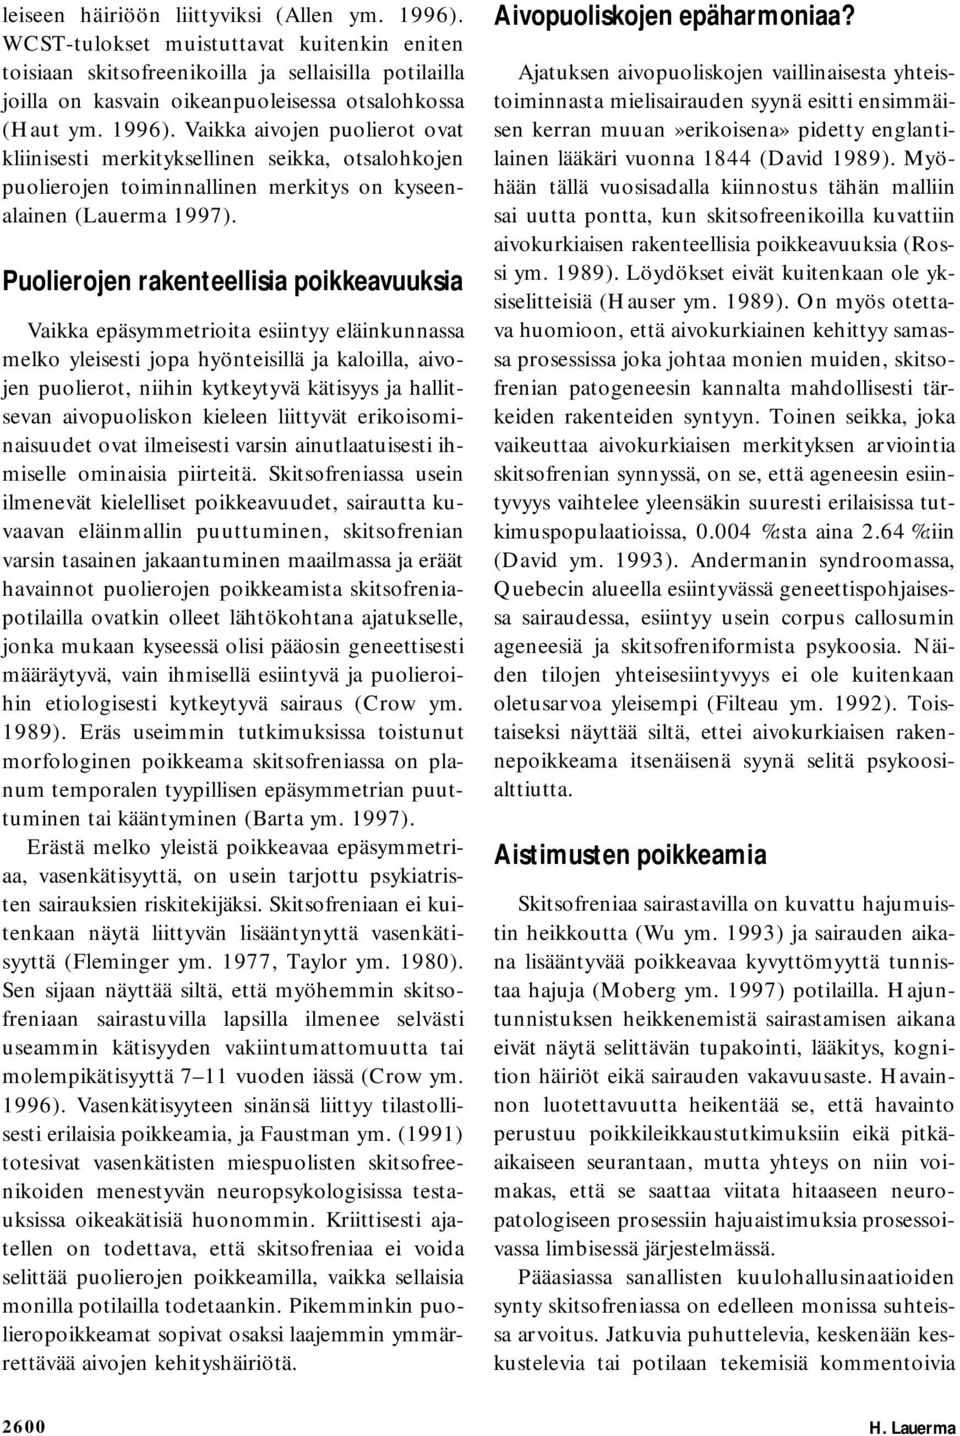 Vaikka aivojen puolierot ovat kliinisesti merkityksellinen seikka, otsalohkojen puolierojen toiminnallinen merkitys on kyseenalainen (Lauerma 1997).